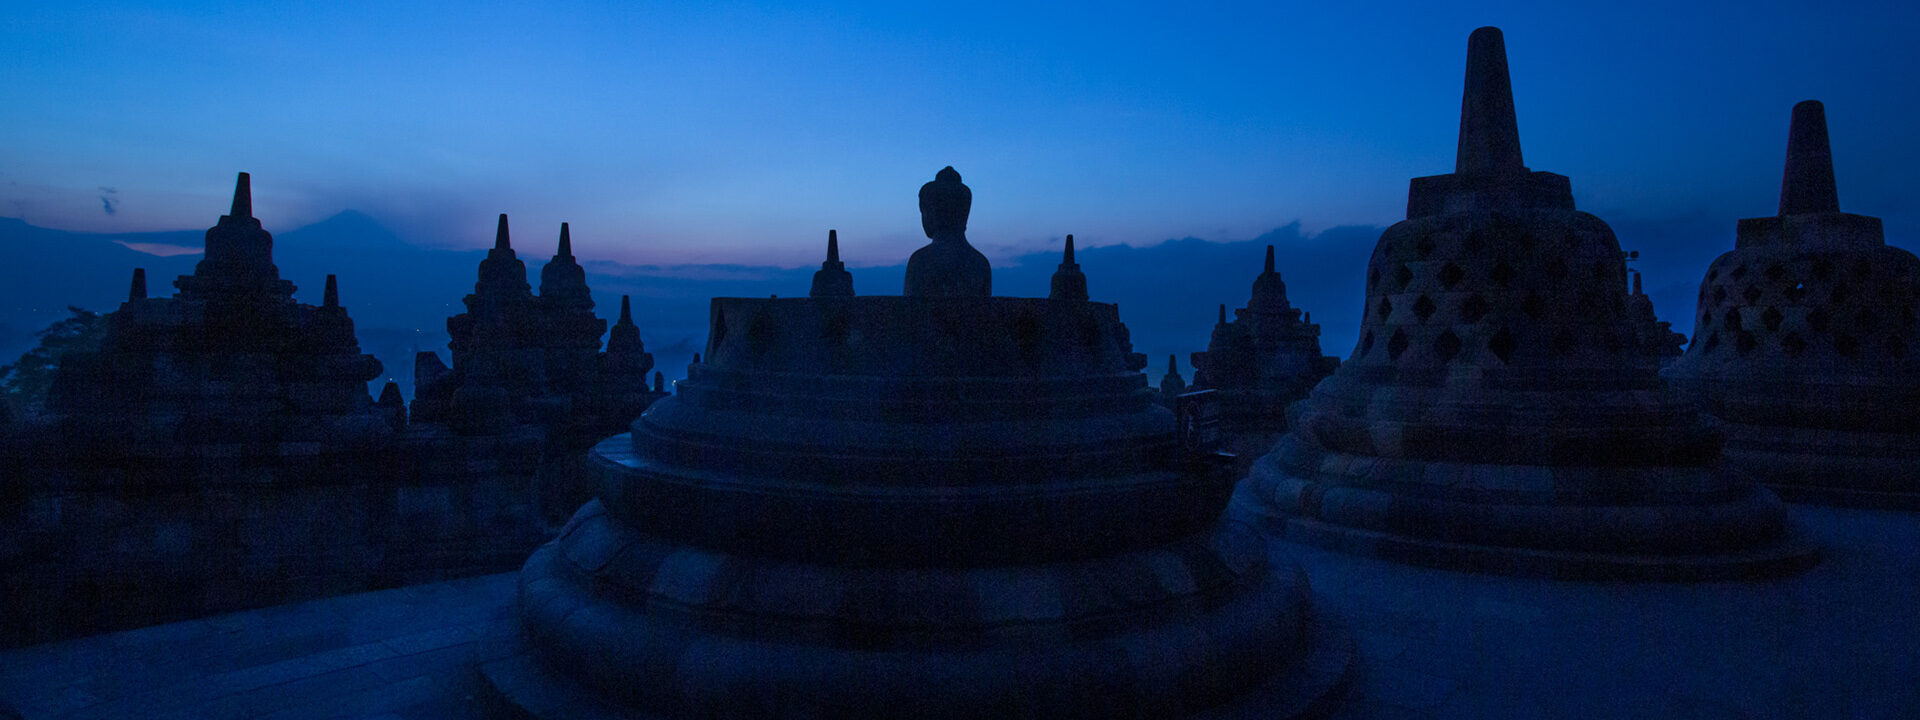 Sliderbild: Buddhas auf dem Borobudur